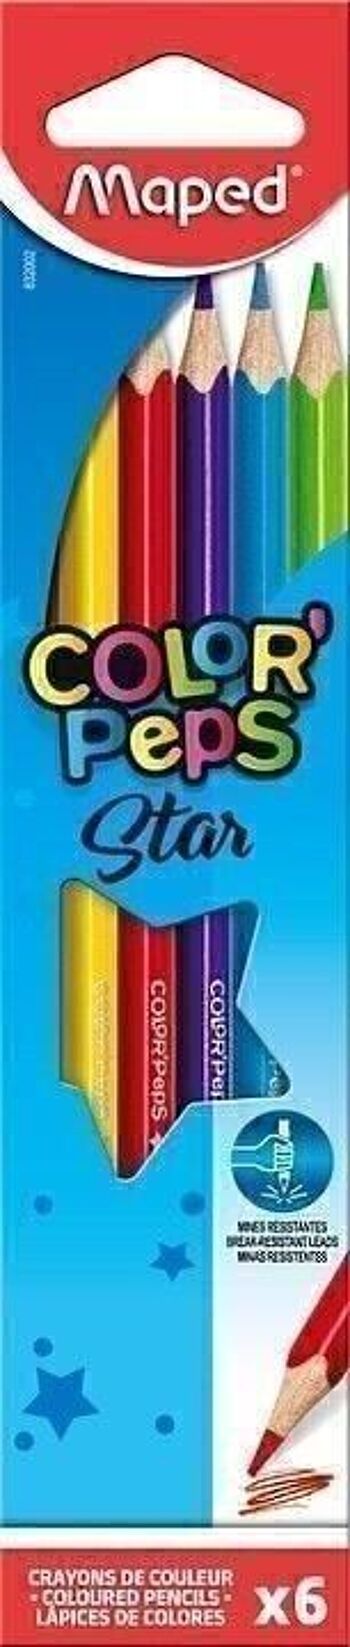 6 crayons de couleur COLOR'PEPS STAR en pochette carton 1